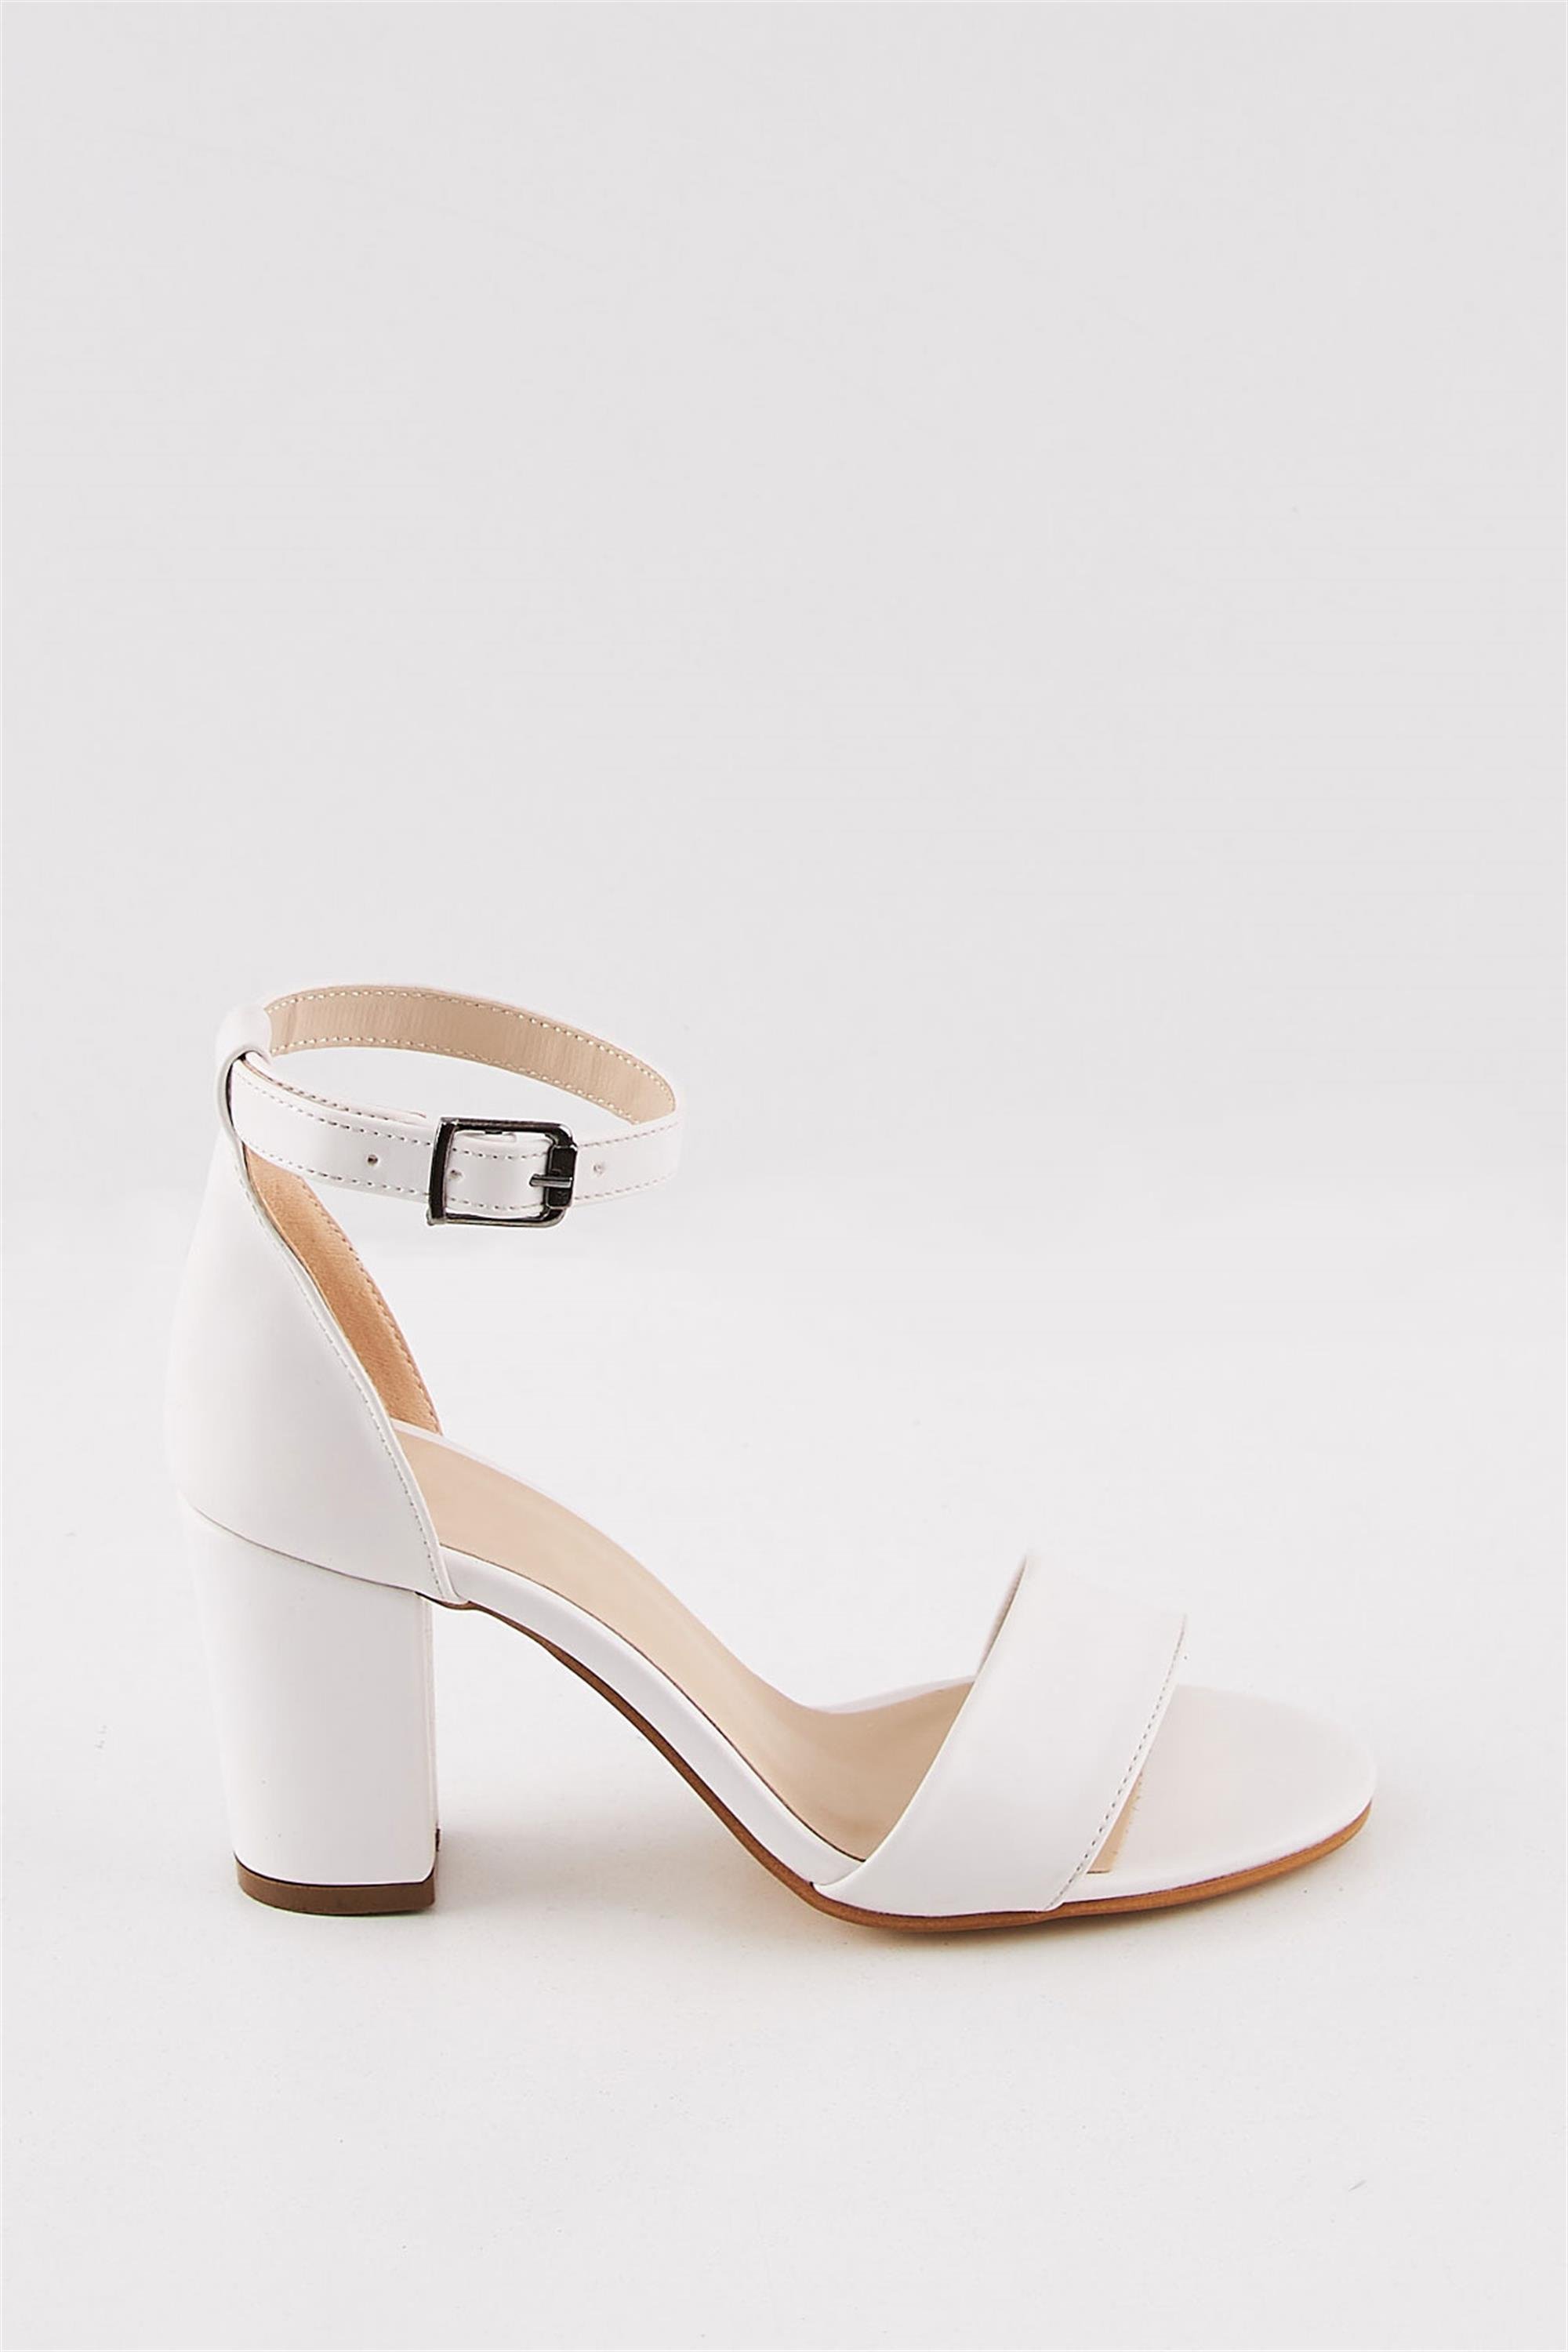 Ayat Beyaz Kısa Topuklu Kadın Ayakkabısı